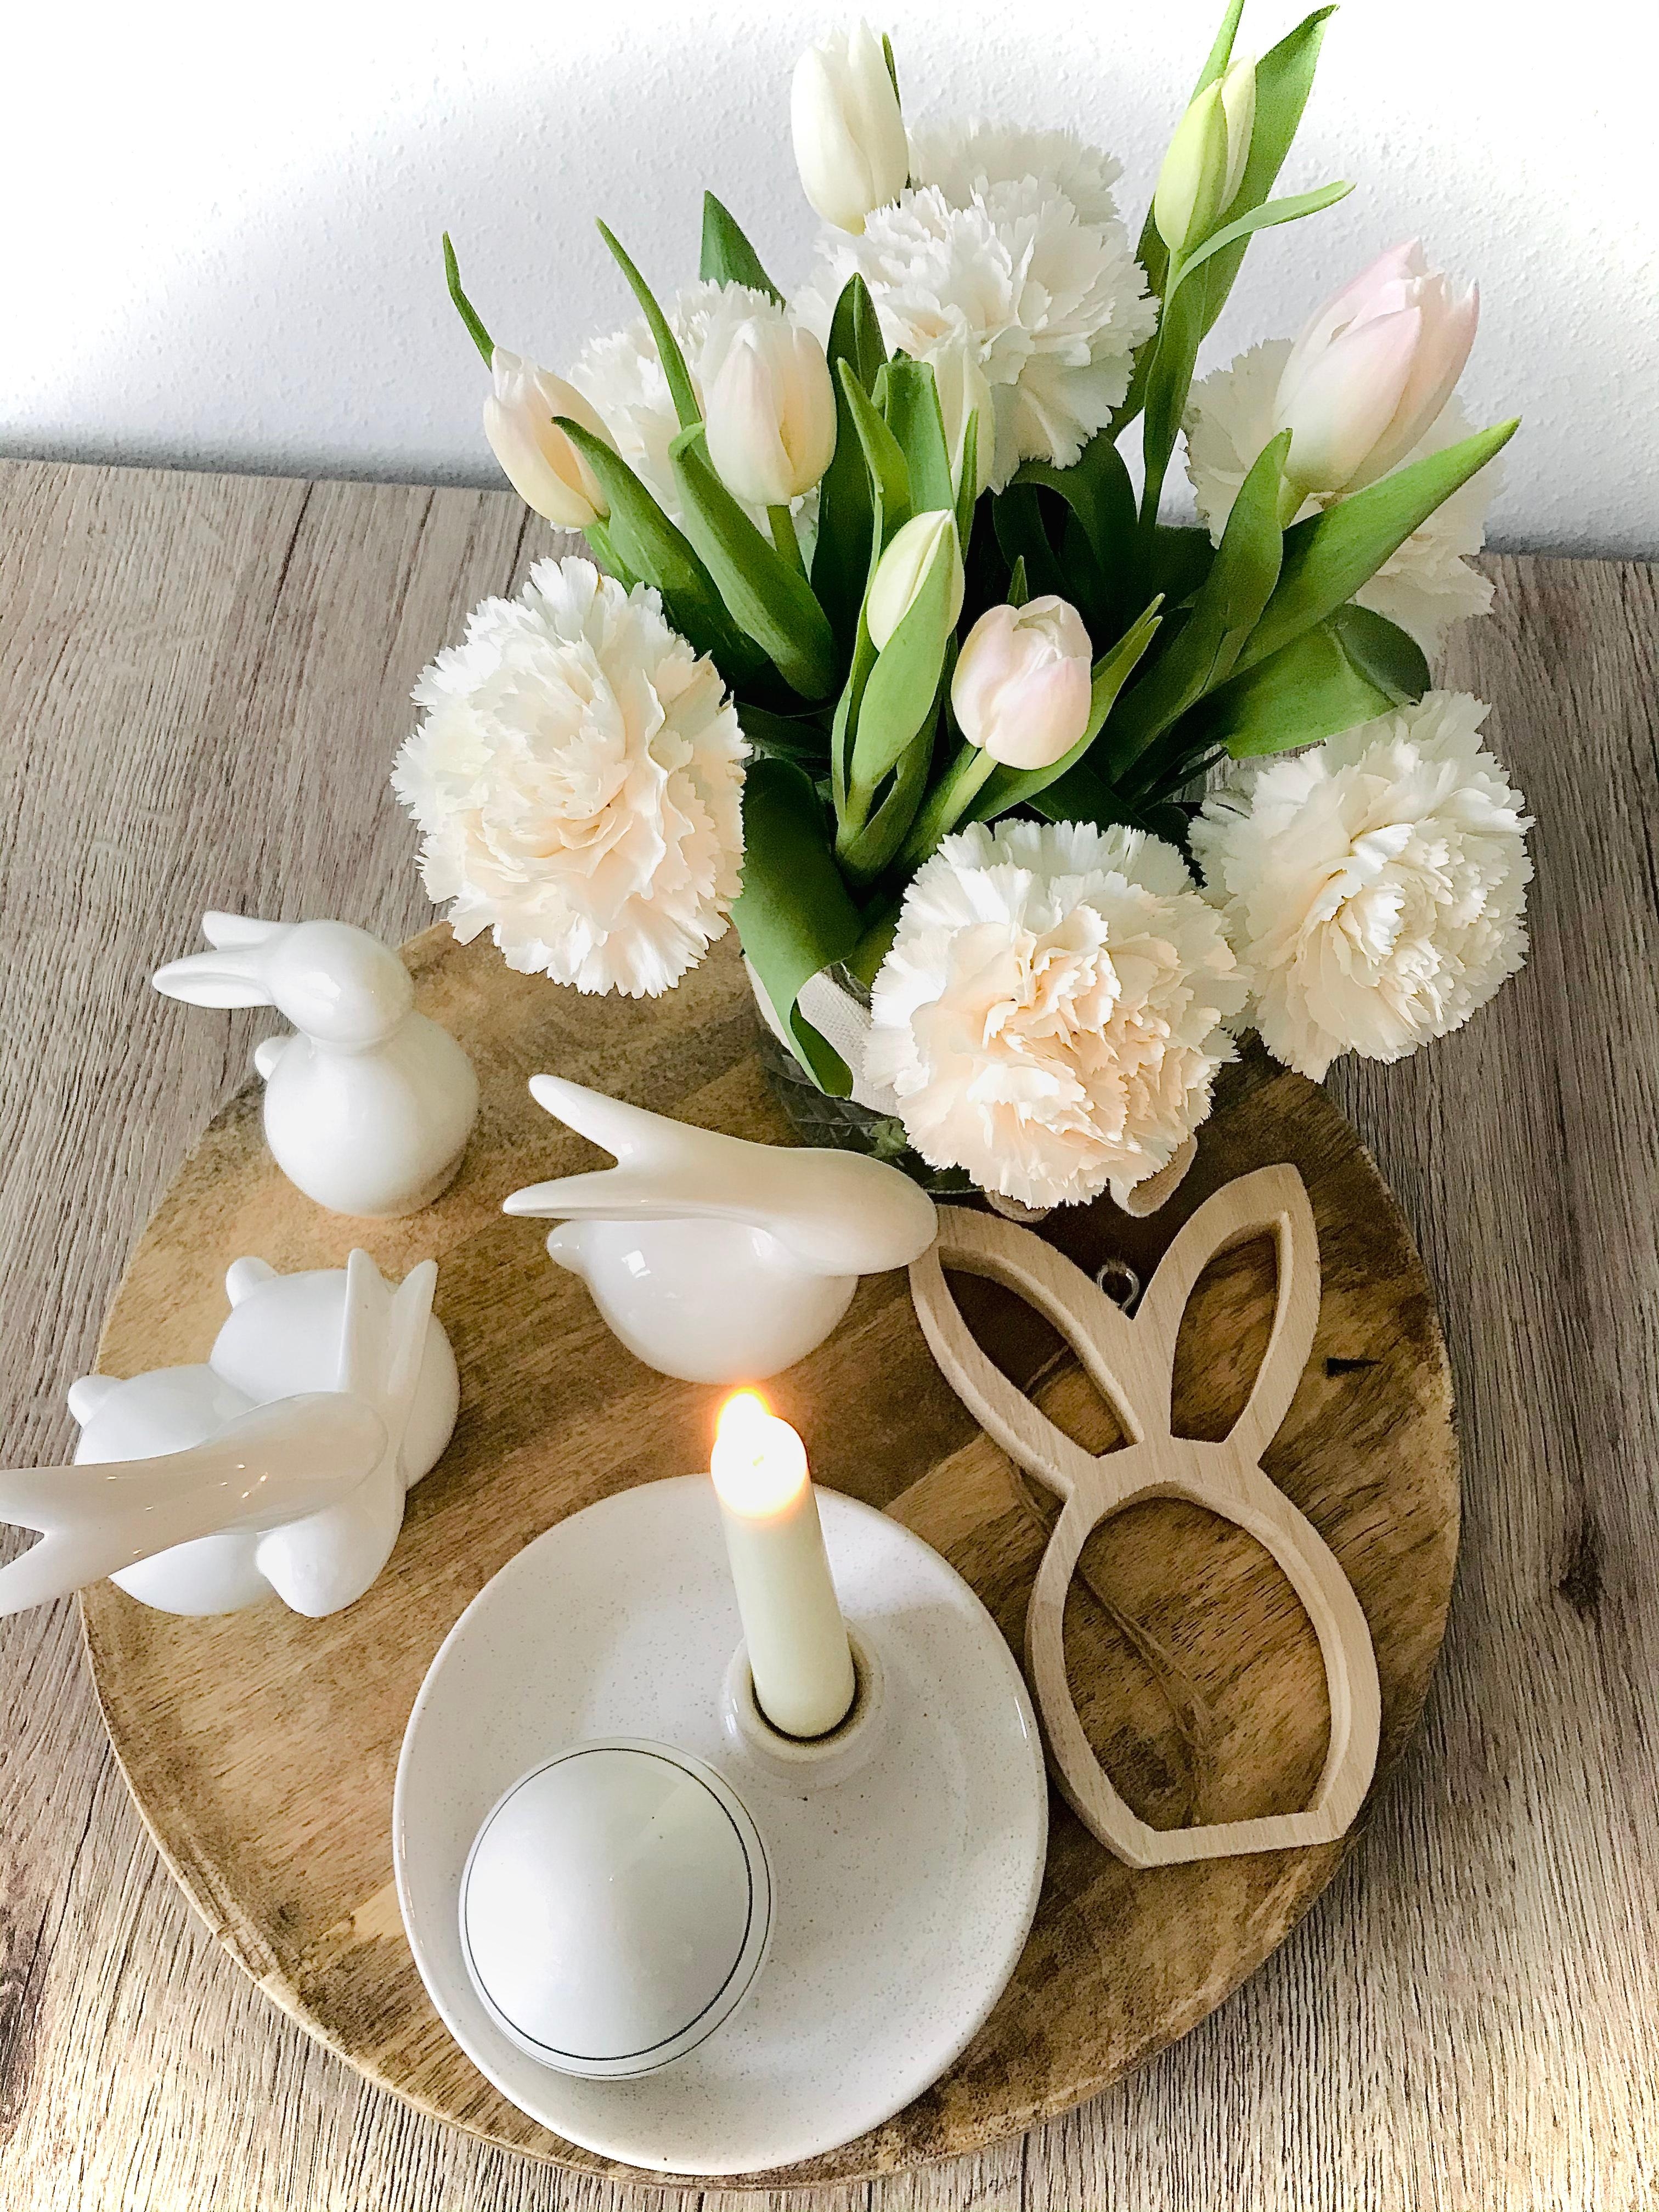 Frische Blumen auf dem Esstisch 🤍
#ostern #tulpen #kerzen #tischdeko #Küche #nelken 